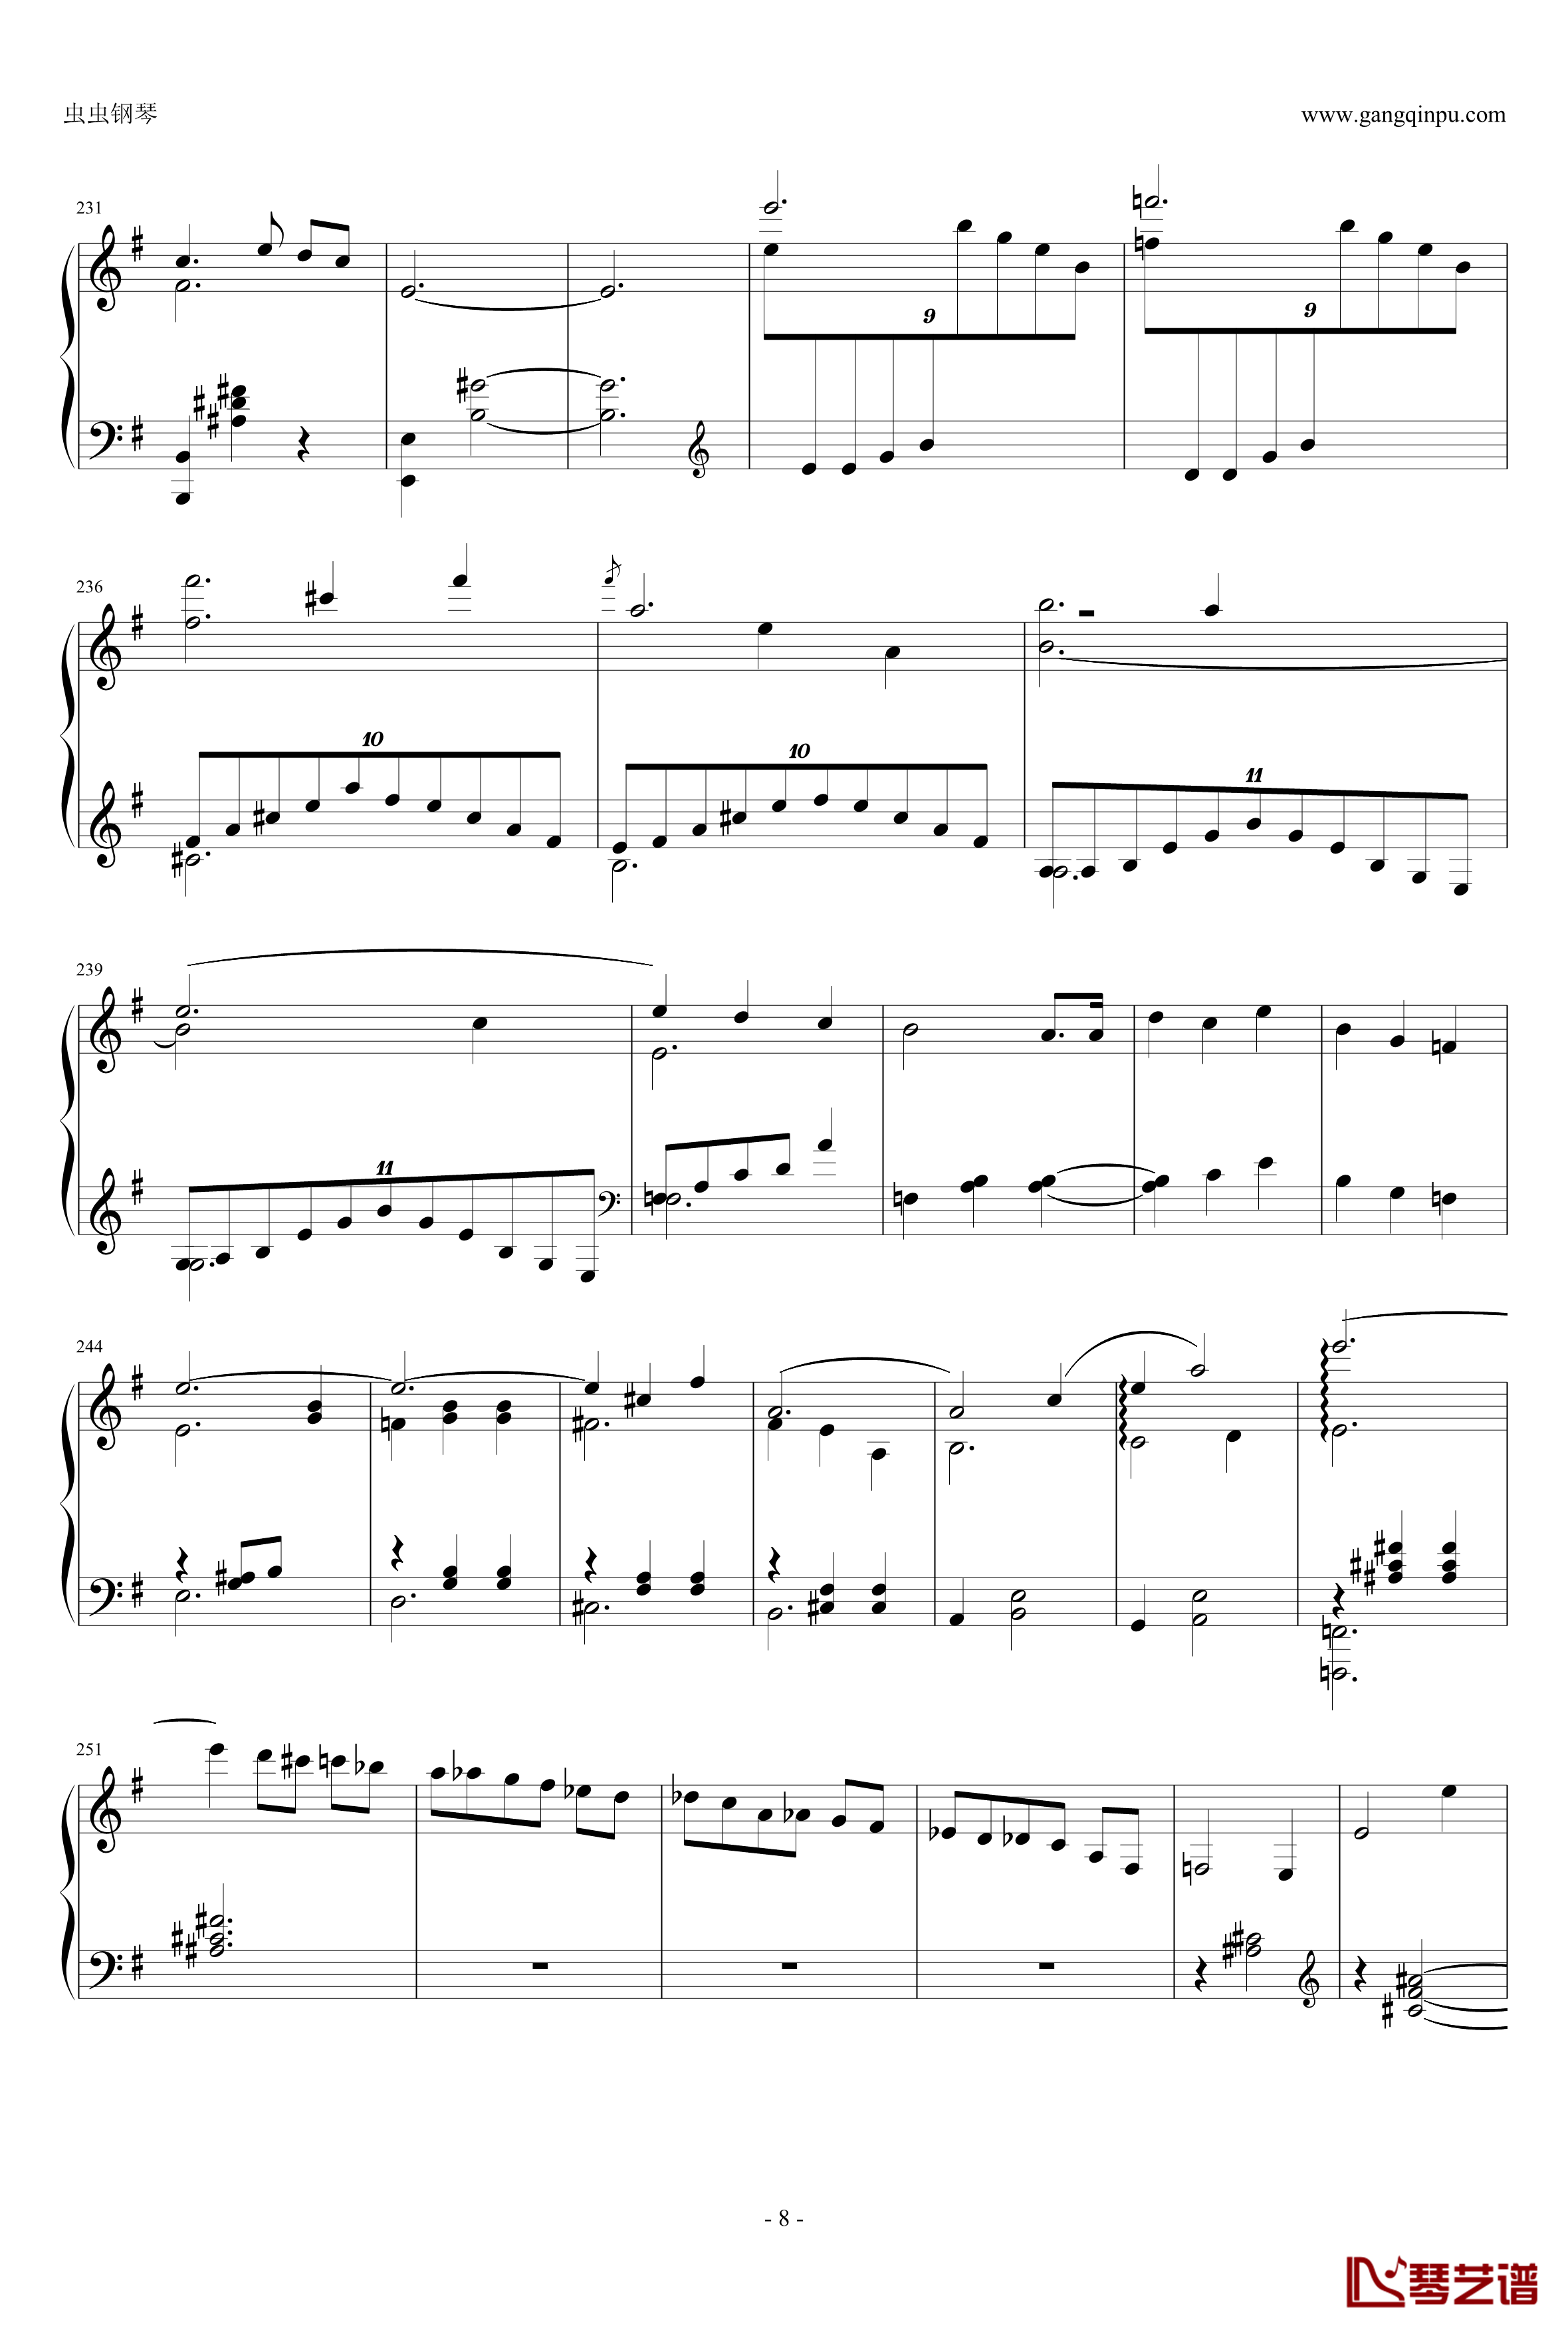 圆舞曲钢琴谱-灰姑娘-普罗科非耶夫8